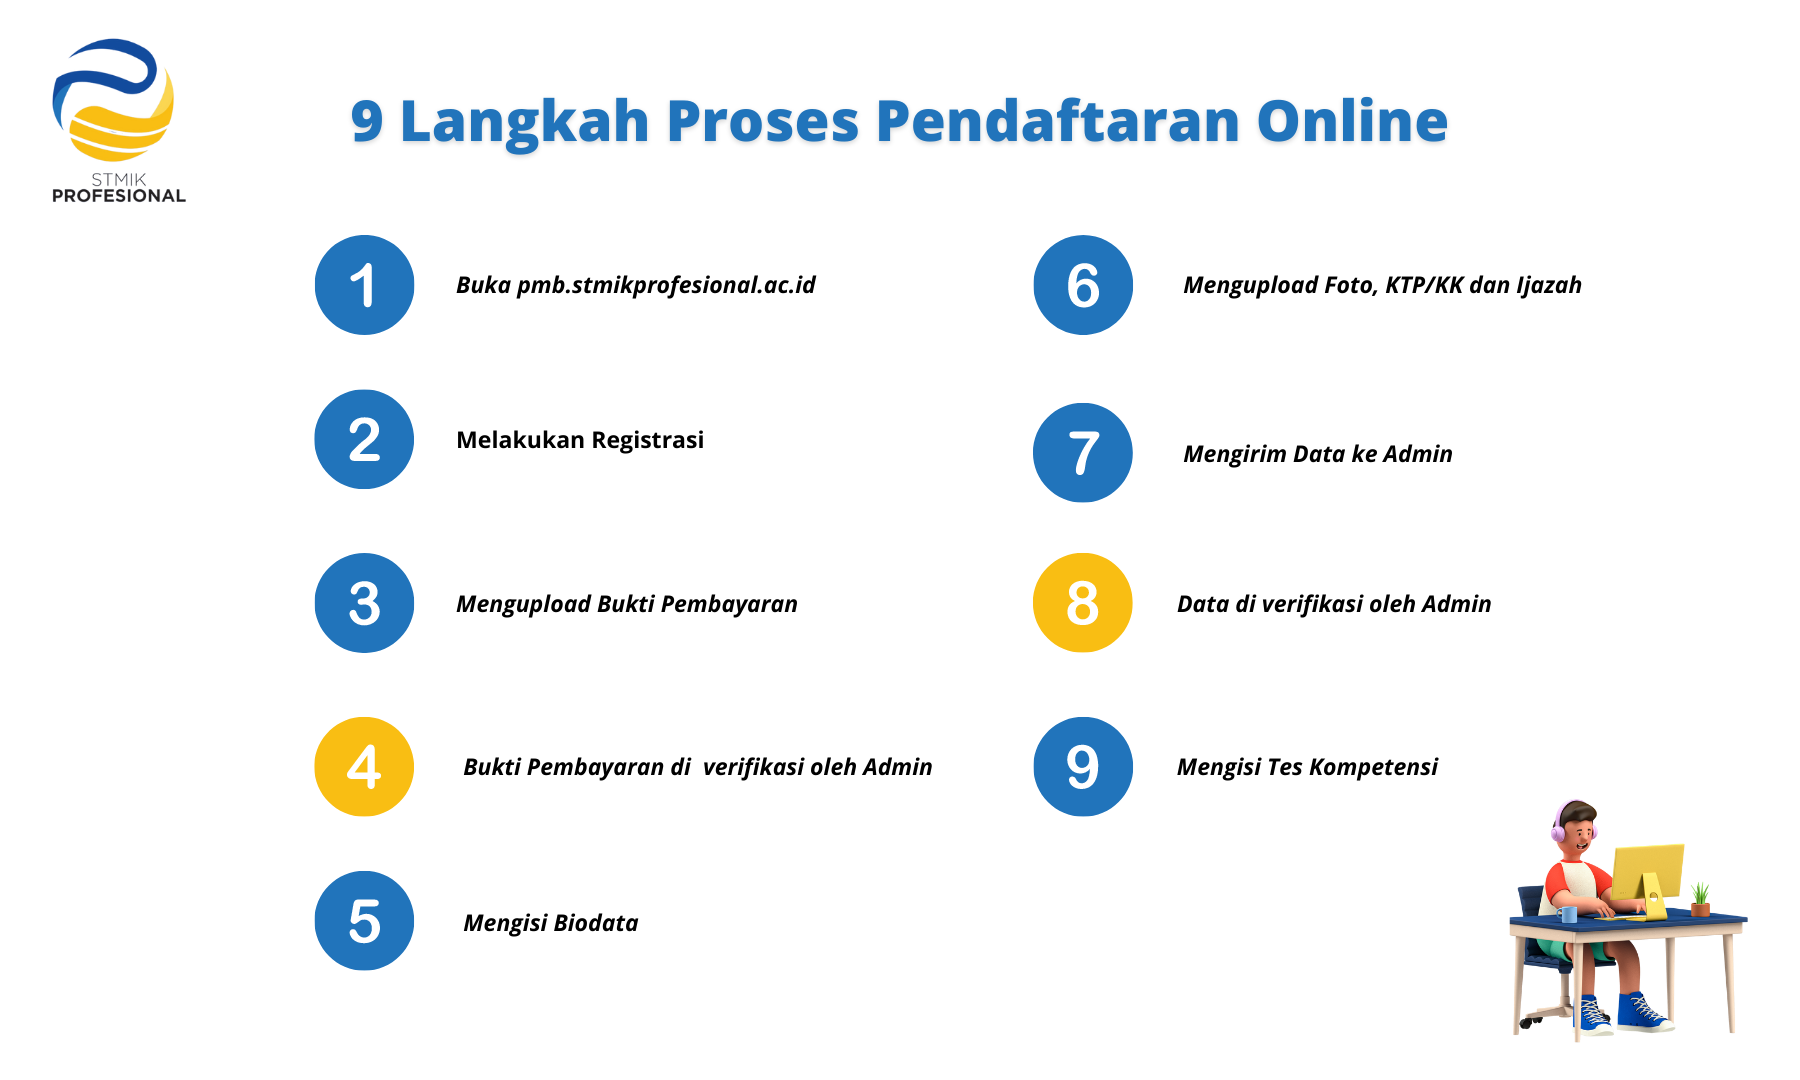 9 Langkah proses pendaftaran online